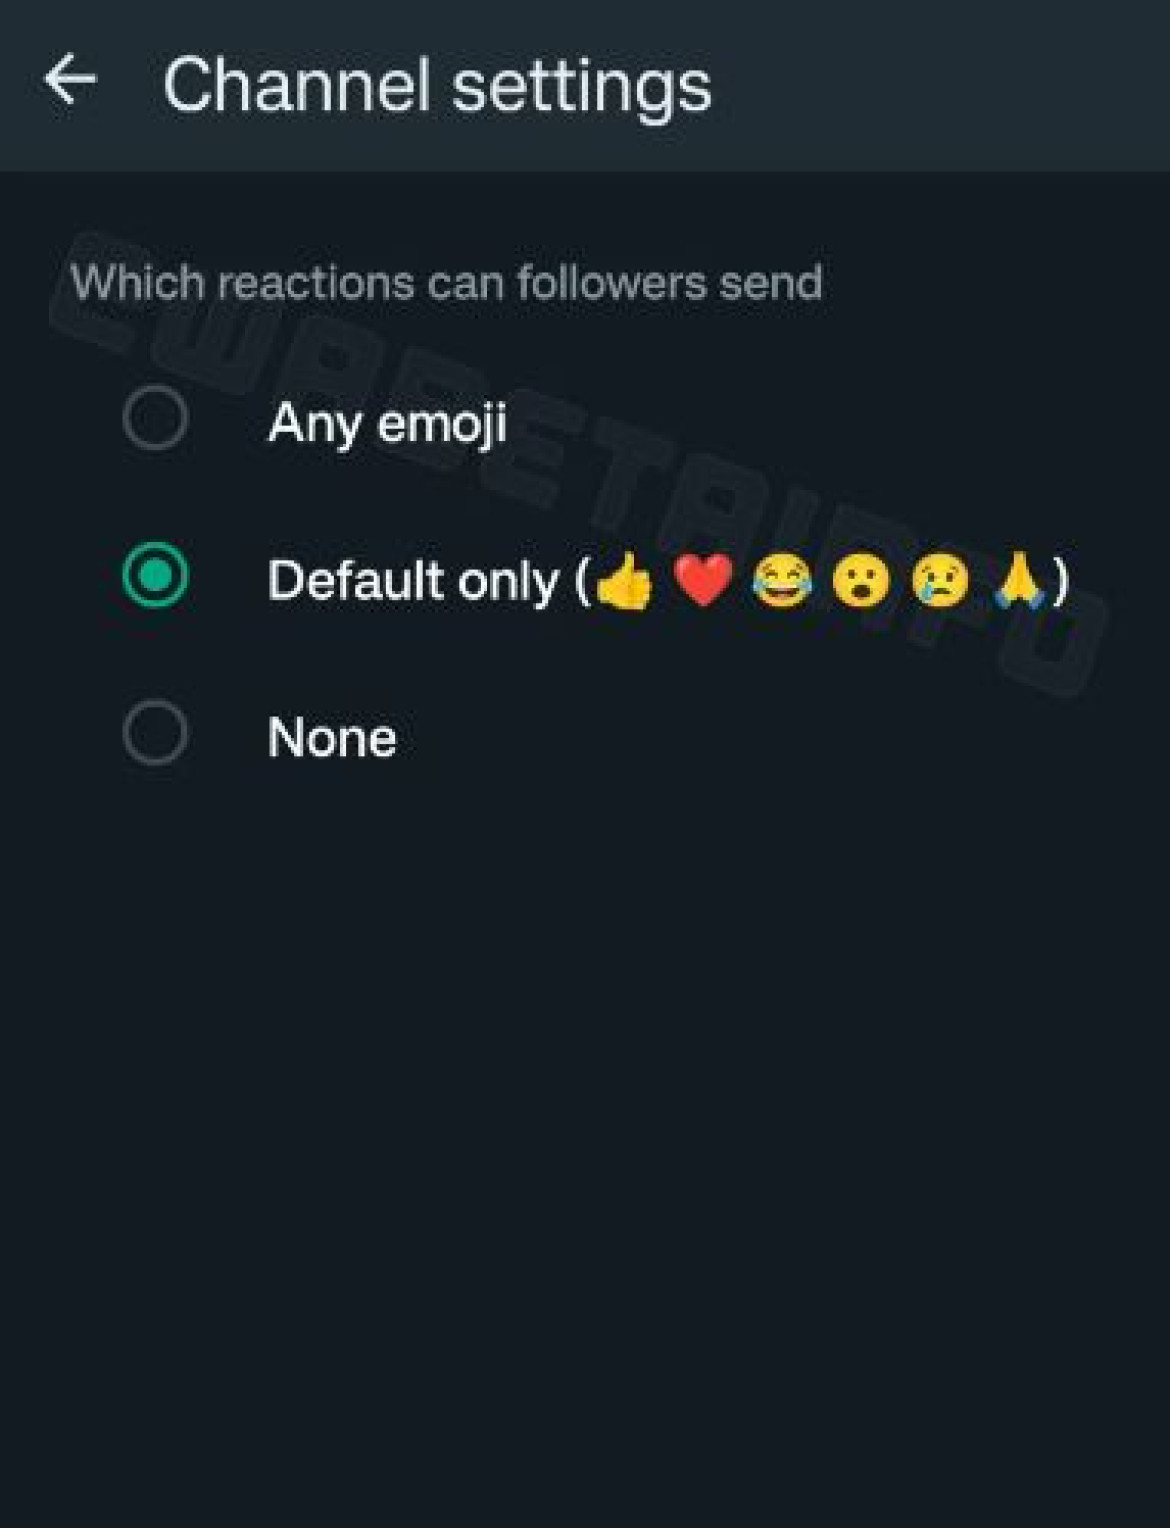 WhatsApp limitará las reacciones de algunos emojis para tener más "seriedad" en los Canales. Foto: WABetaInfo.